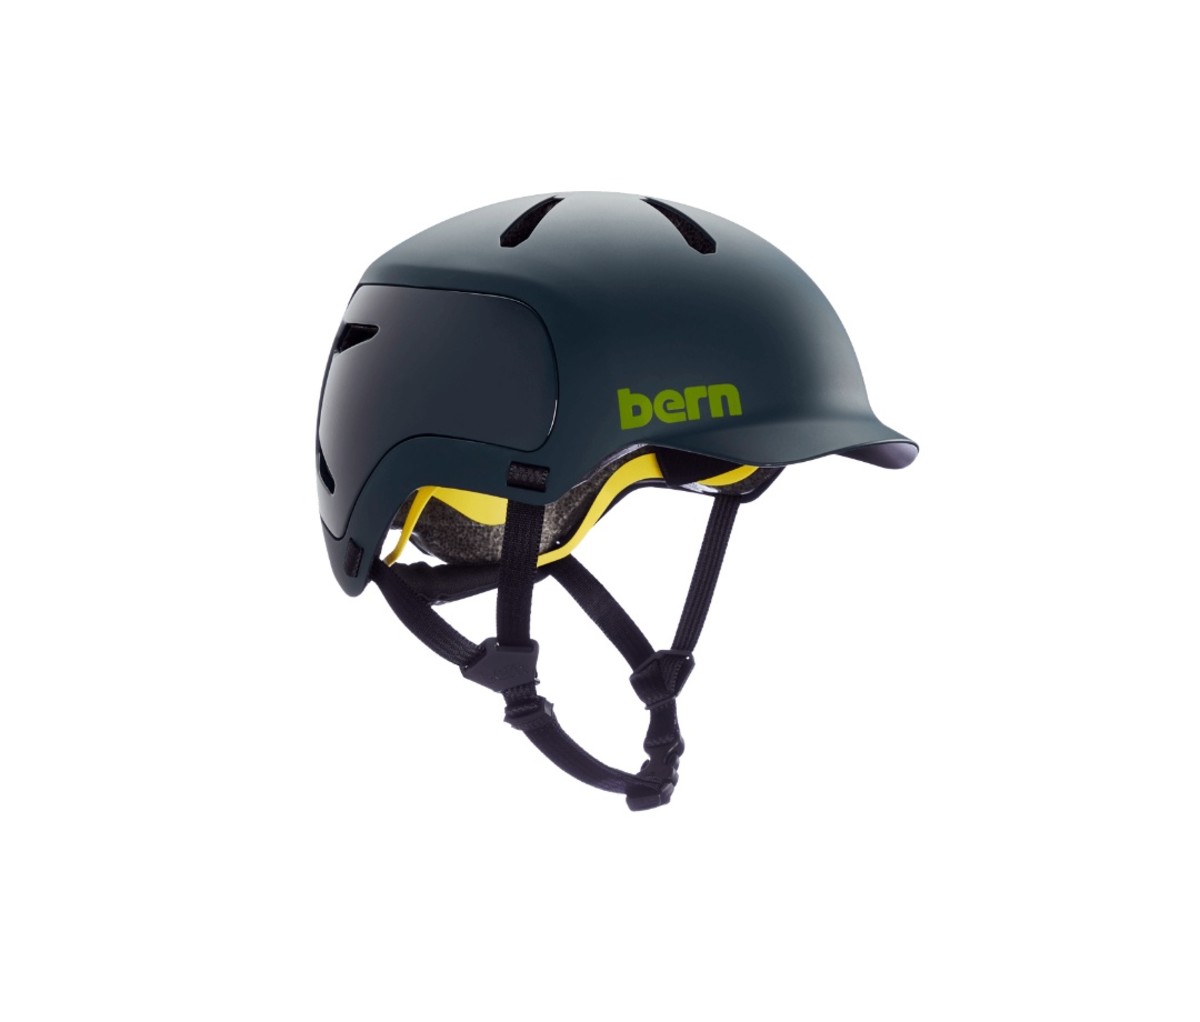 Bern Watts 2.0 bike helmets